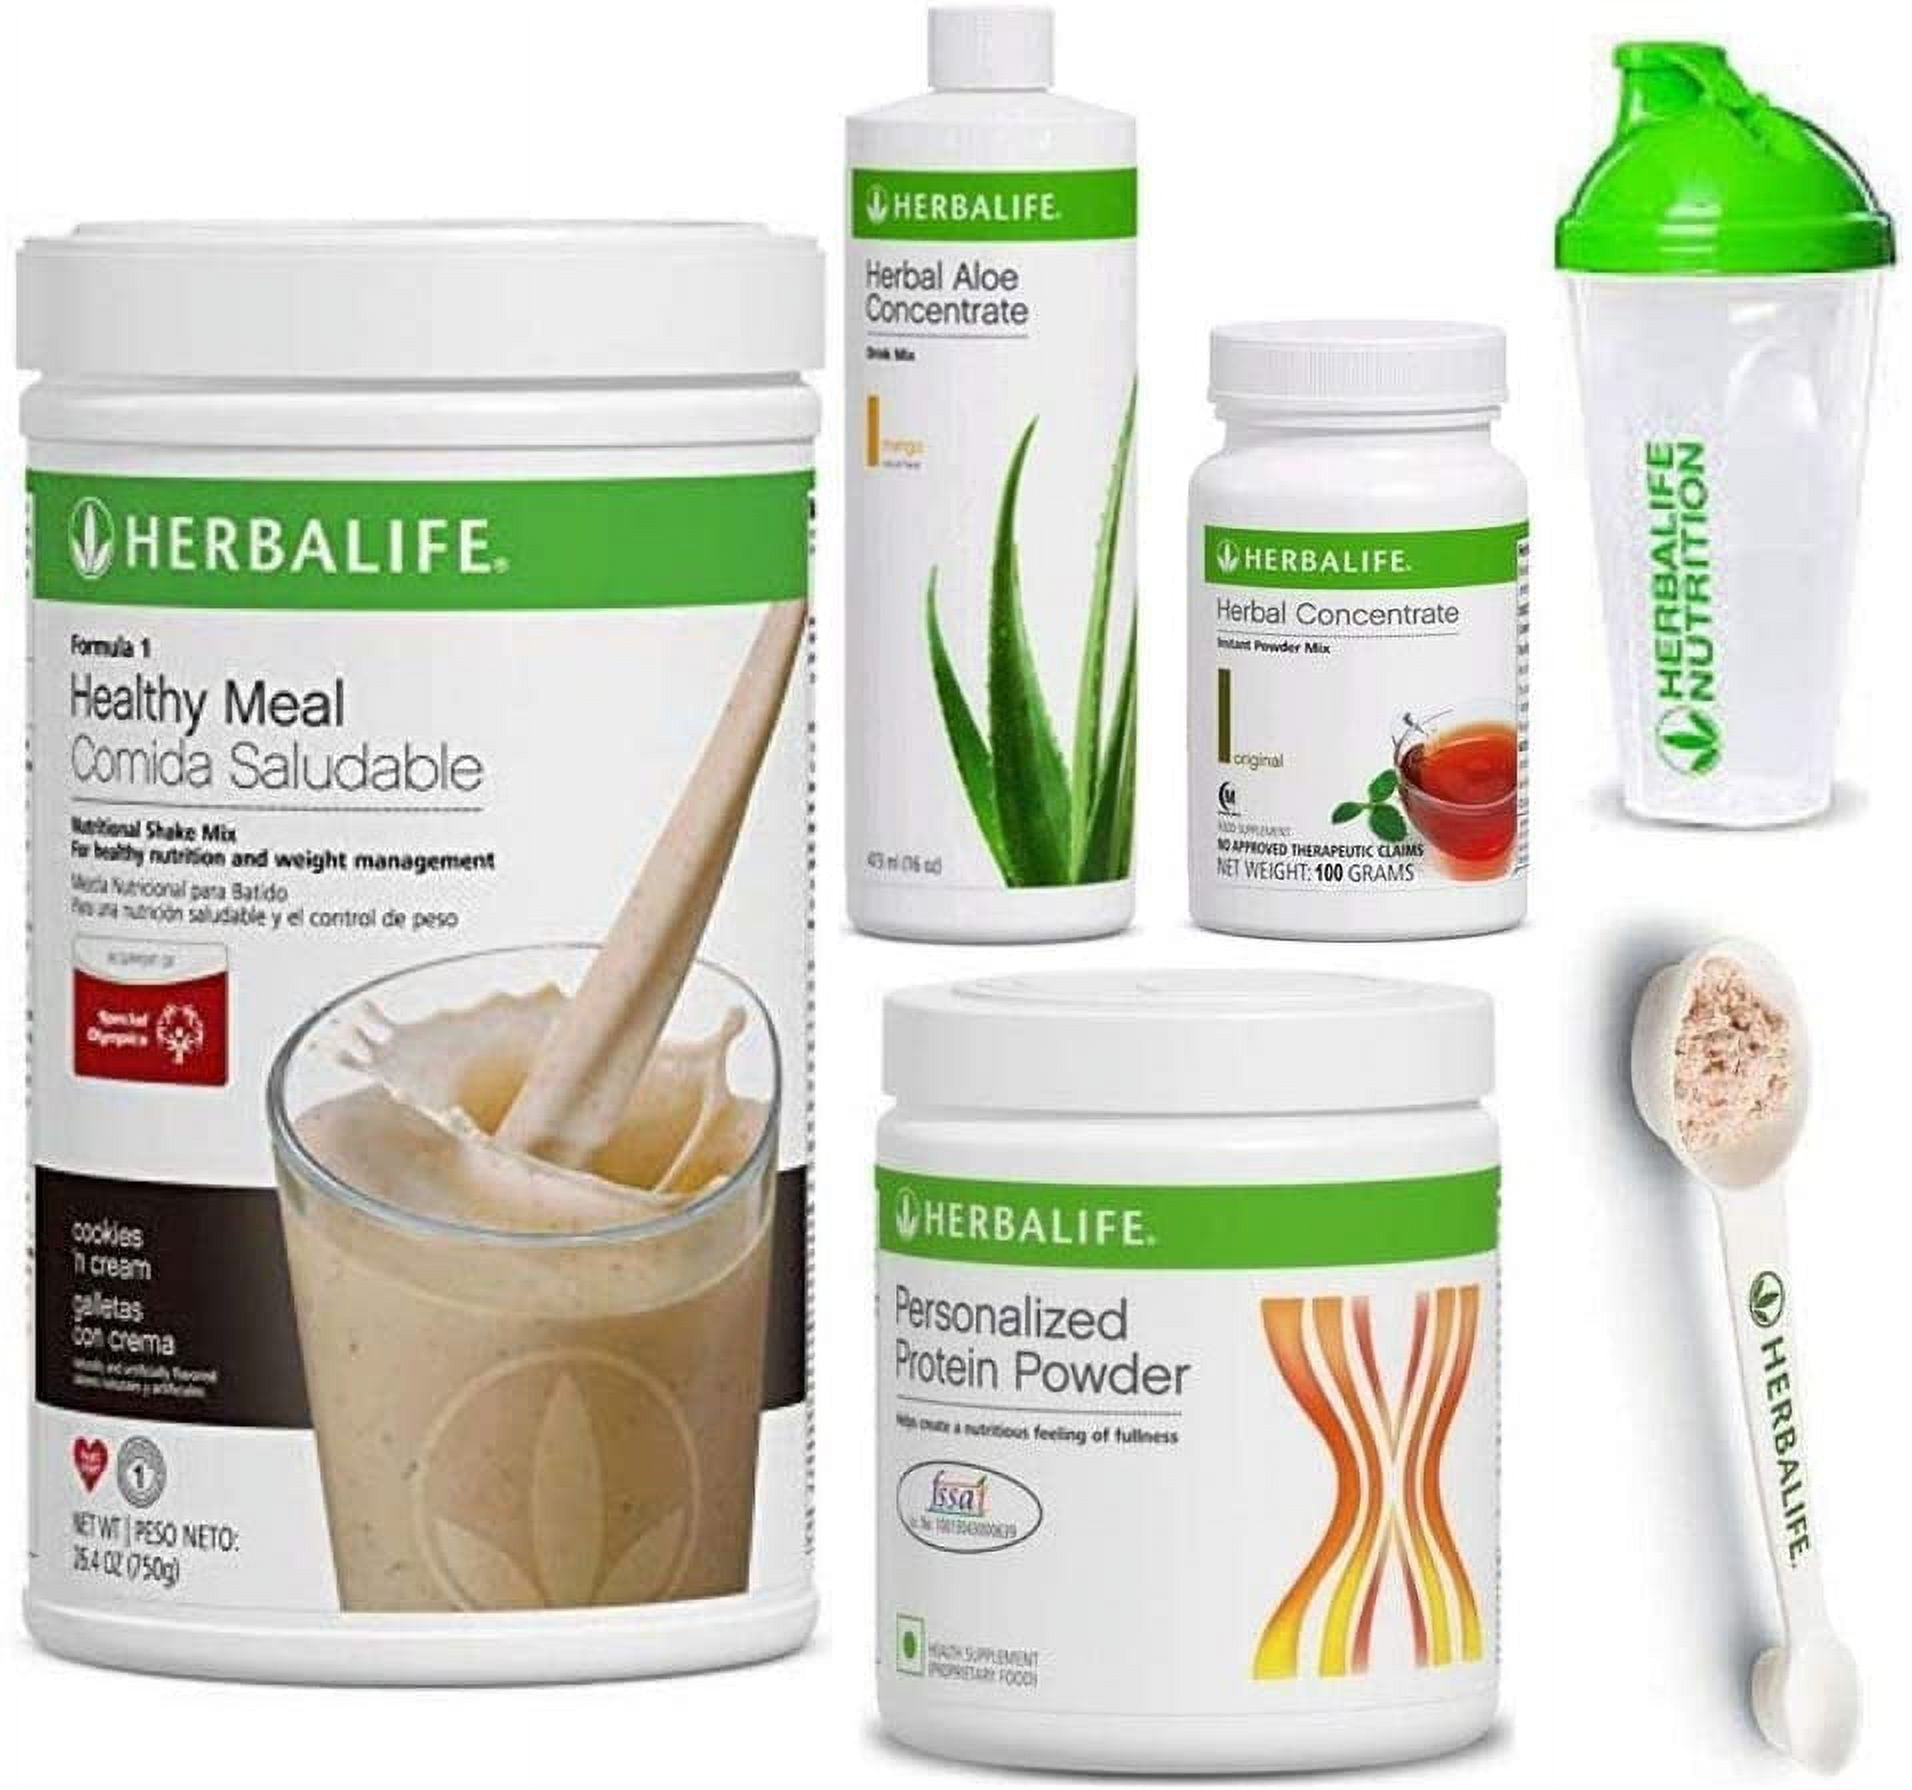 NEW Herbalife Shake Healthy Meal Kit COOKIES & CREAM 